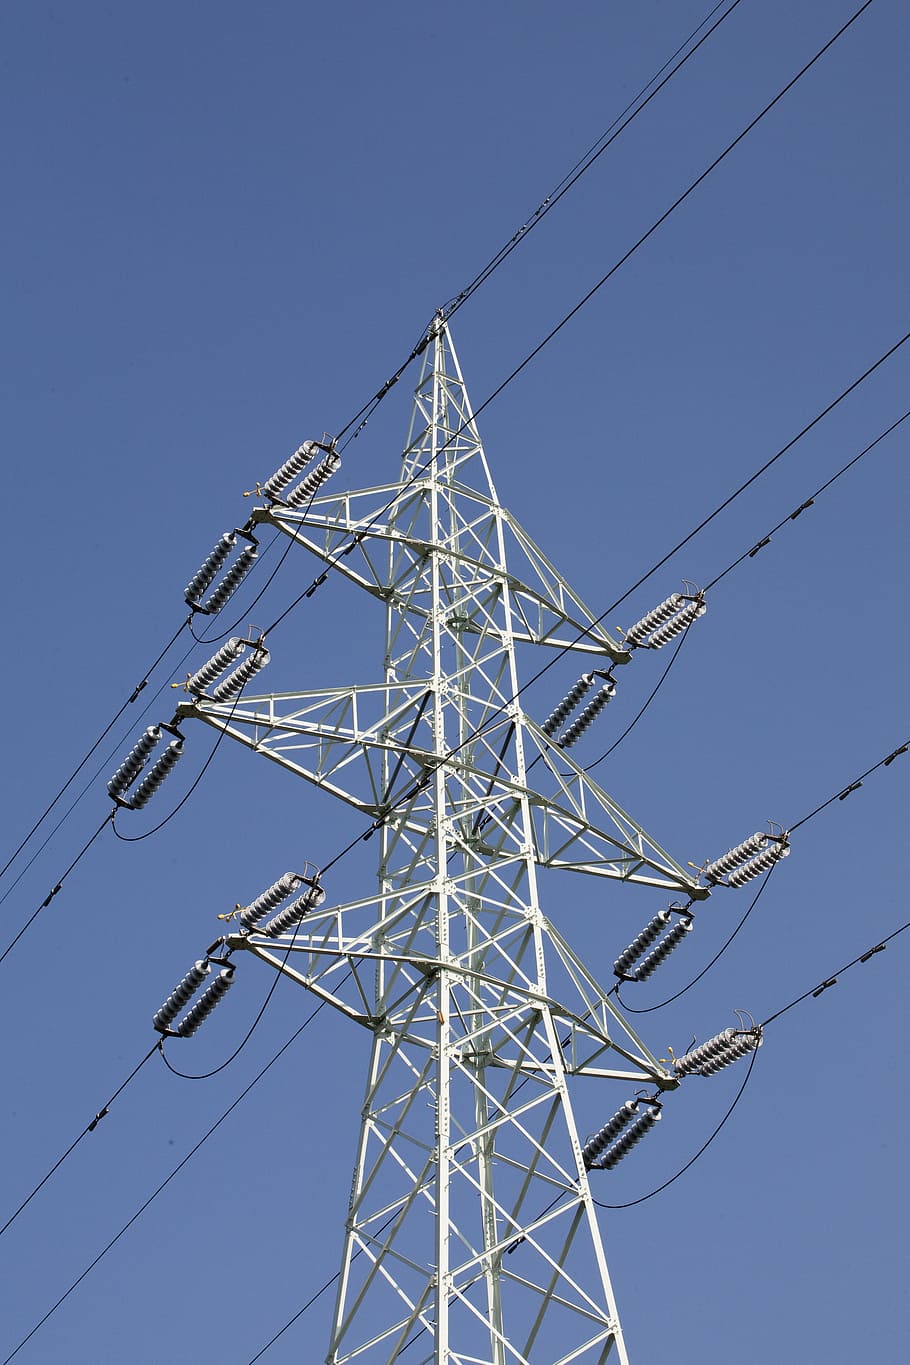 líneas de alta tensión, primera línea, torre de hierro, cable, electricidad, líneas de transmisión, torre de transmisión de potencia, cielo, vista de ángulo bajo, fuente de alimentación